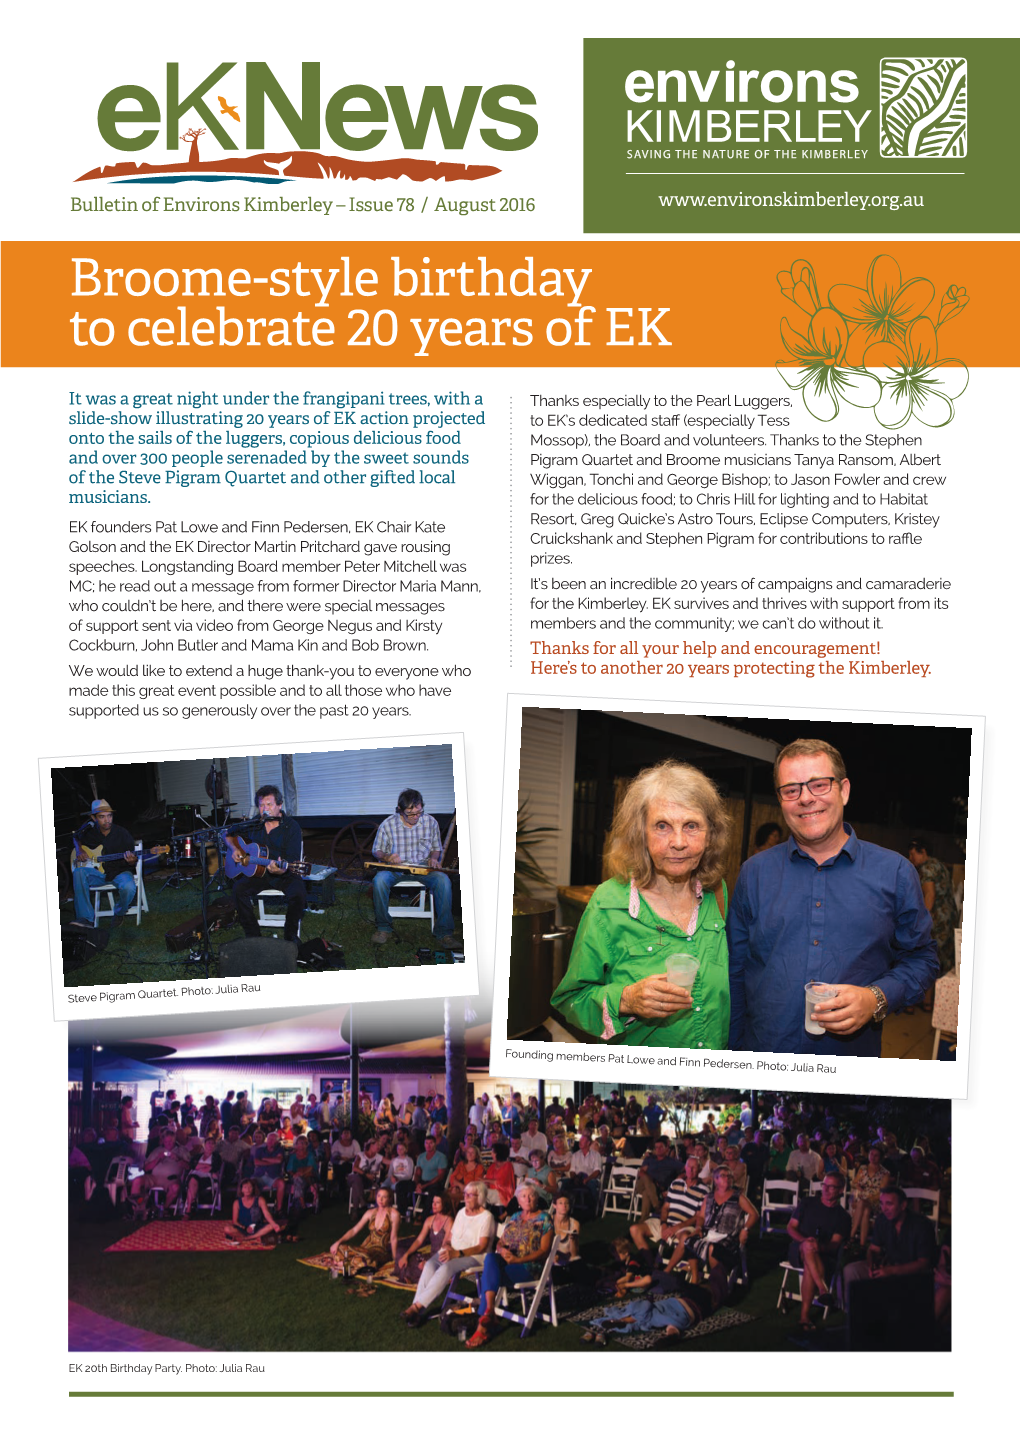 Broome-Style Birthday to Celebrate 20 Years of EK